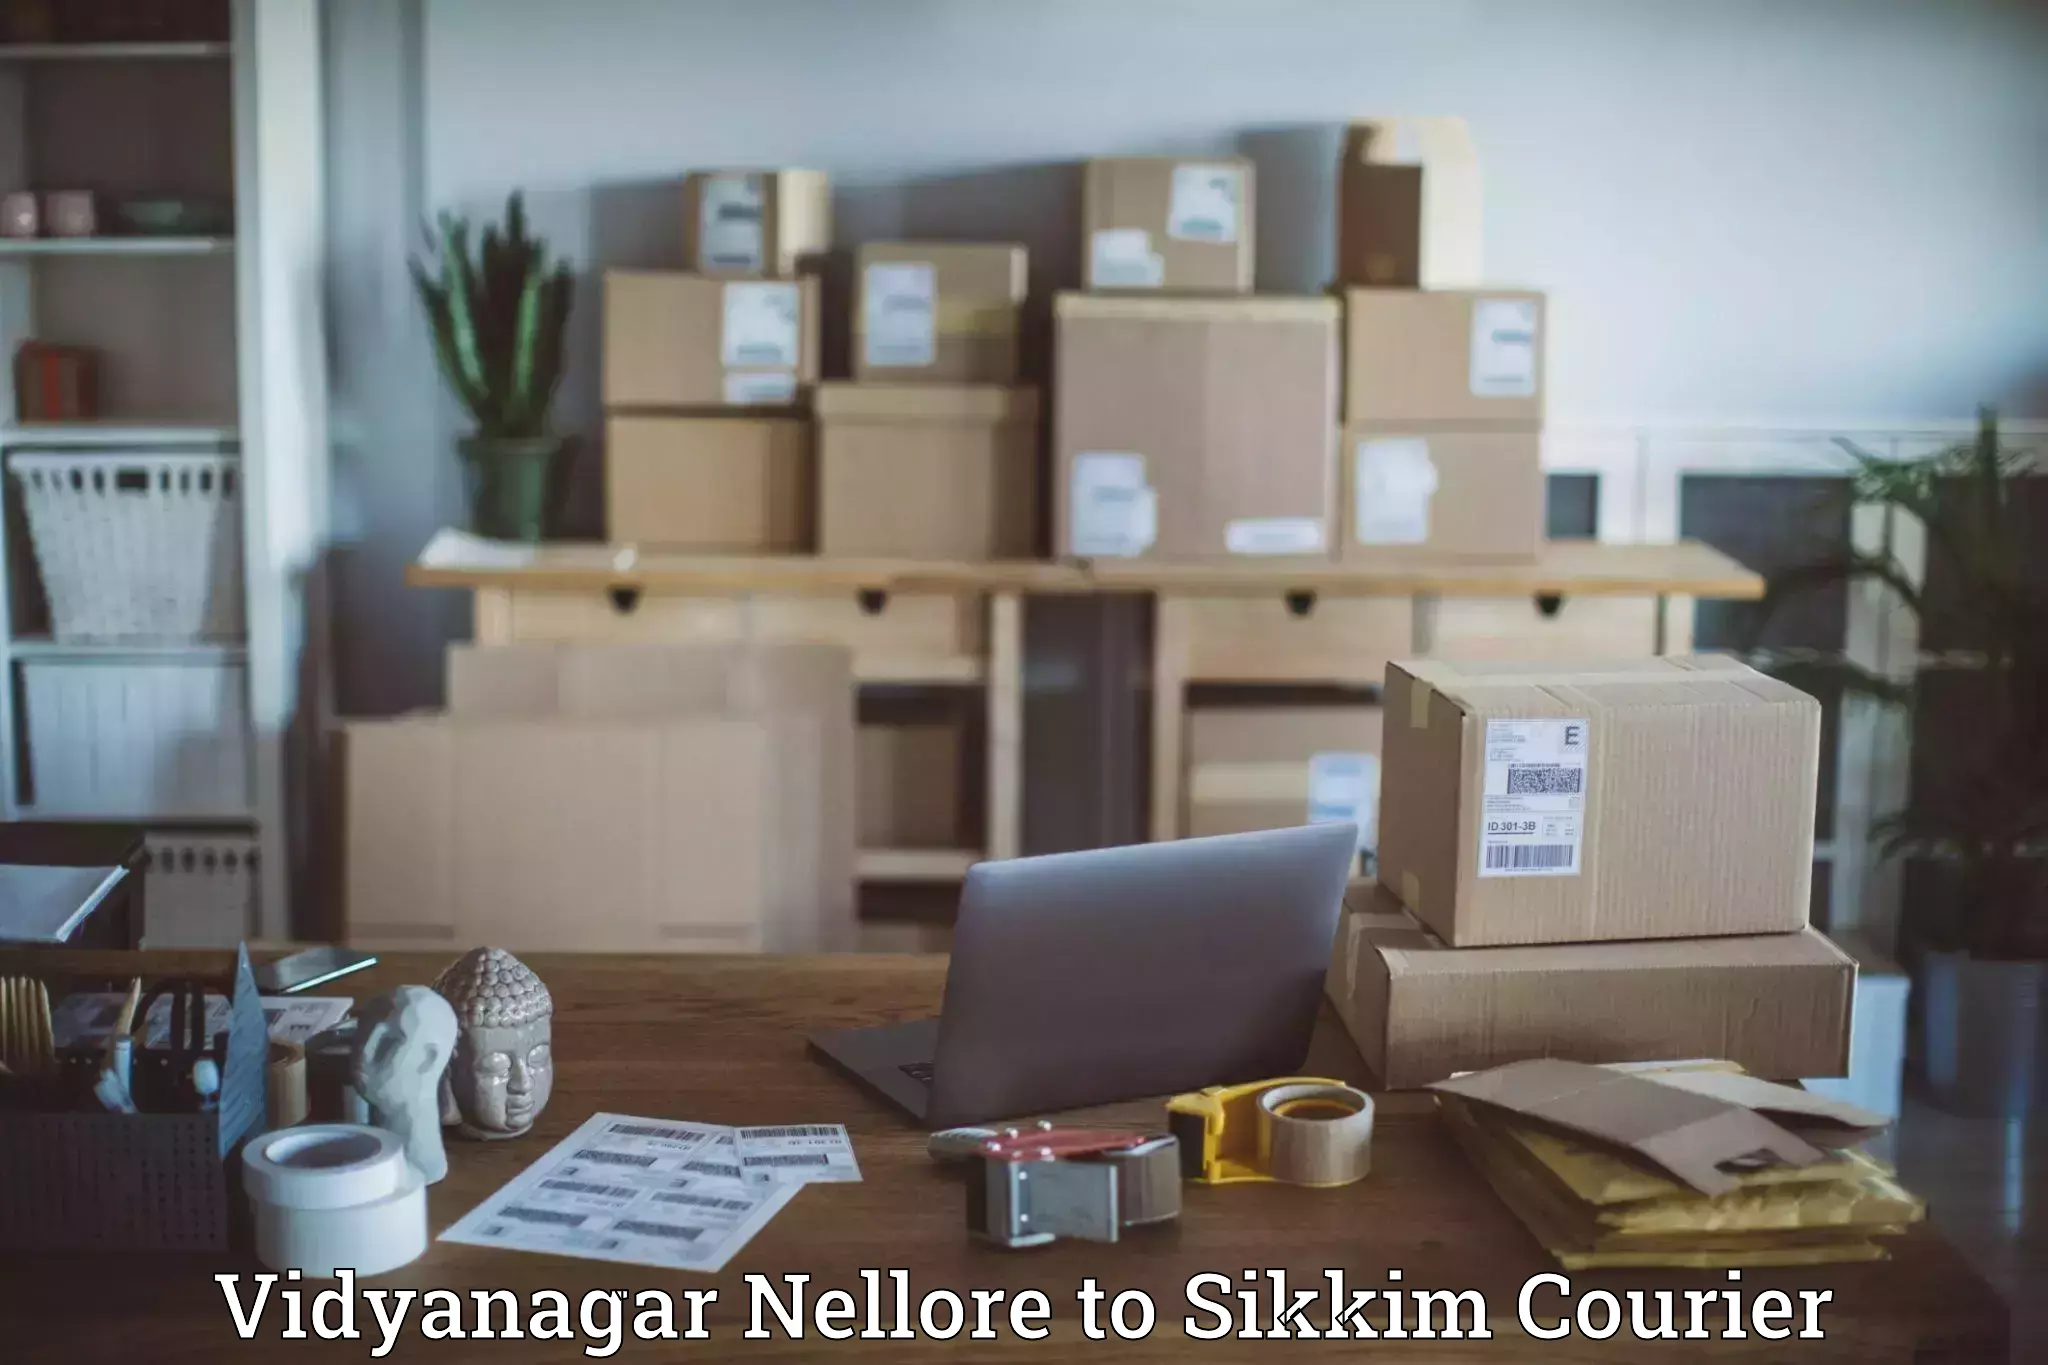 Customer-oriented courier services in Vidyanagar Nellore to West Sikkim